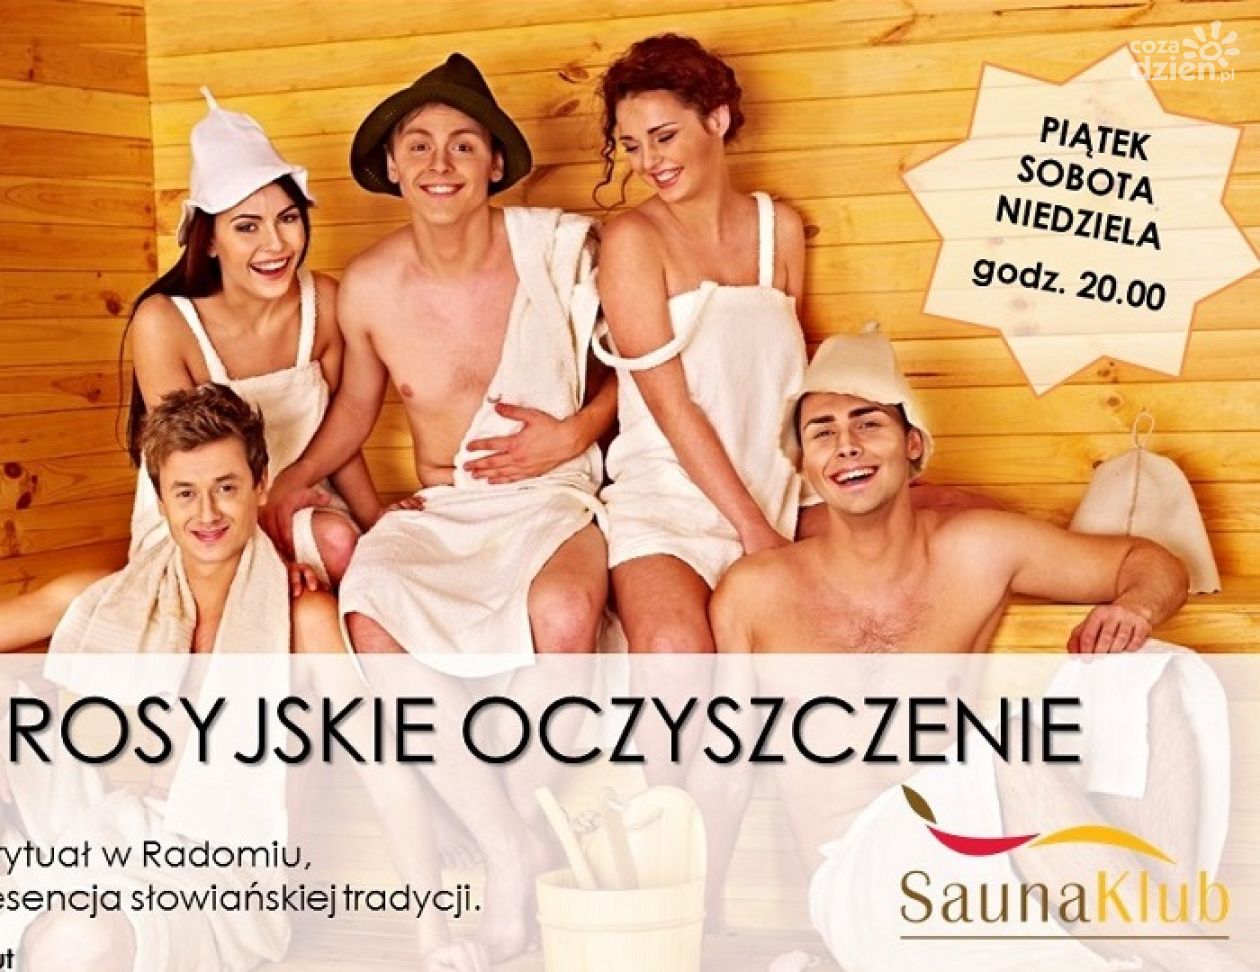 Rosyjskie oczyszczenia w SaunaKlub